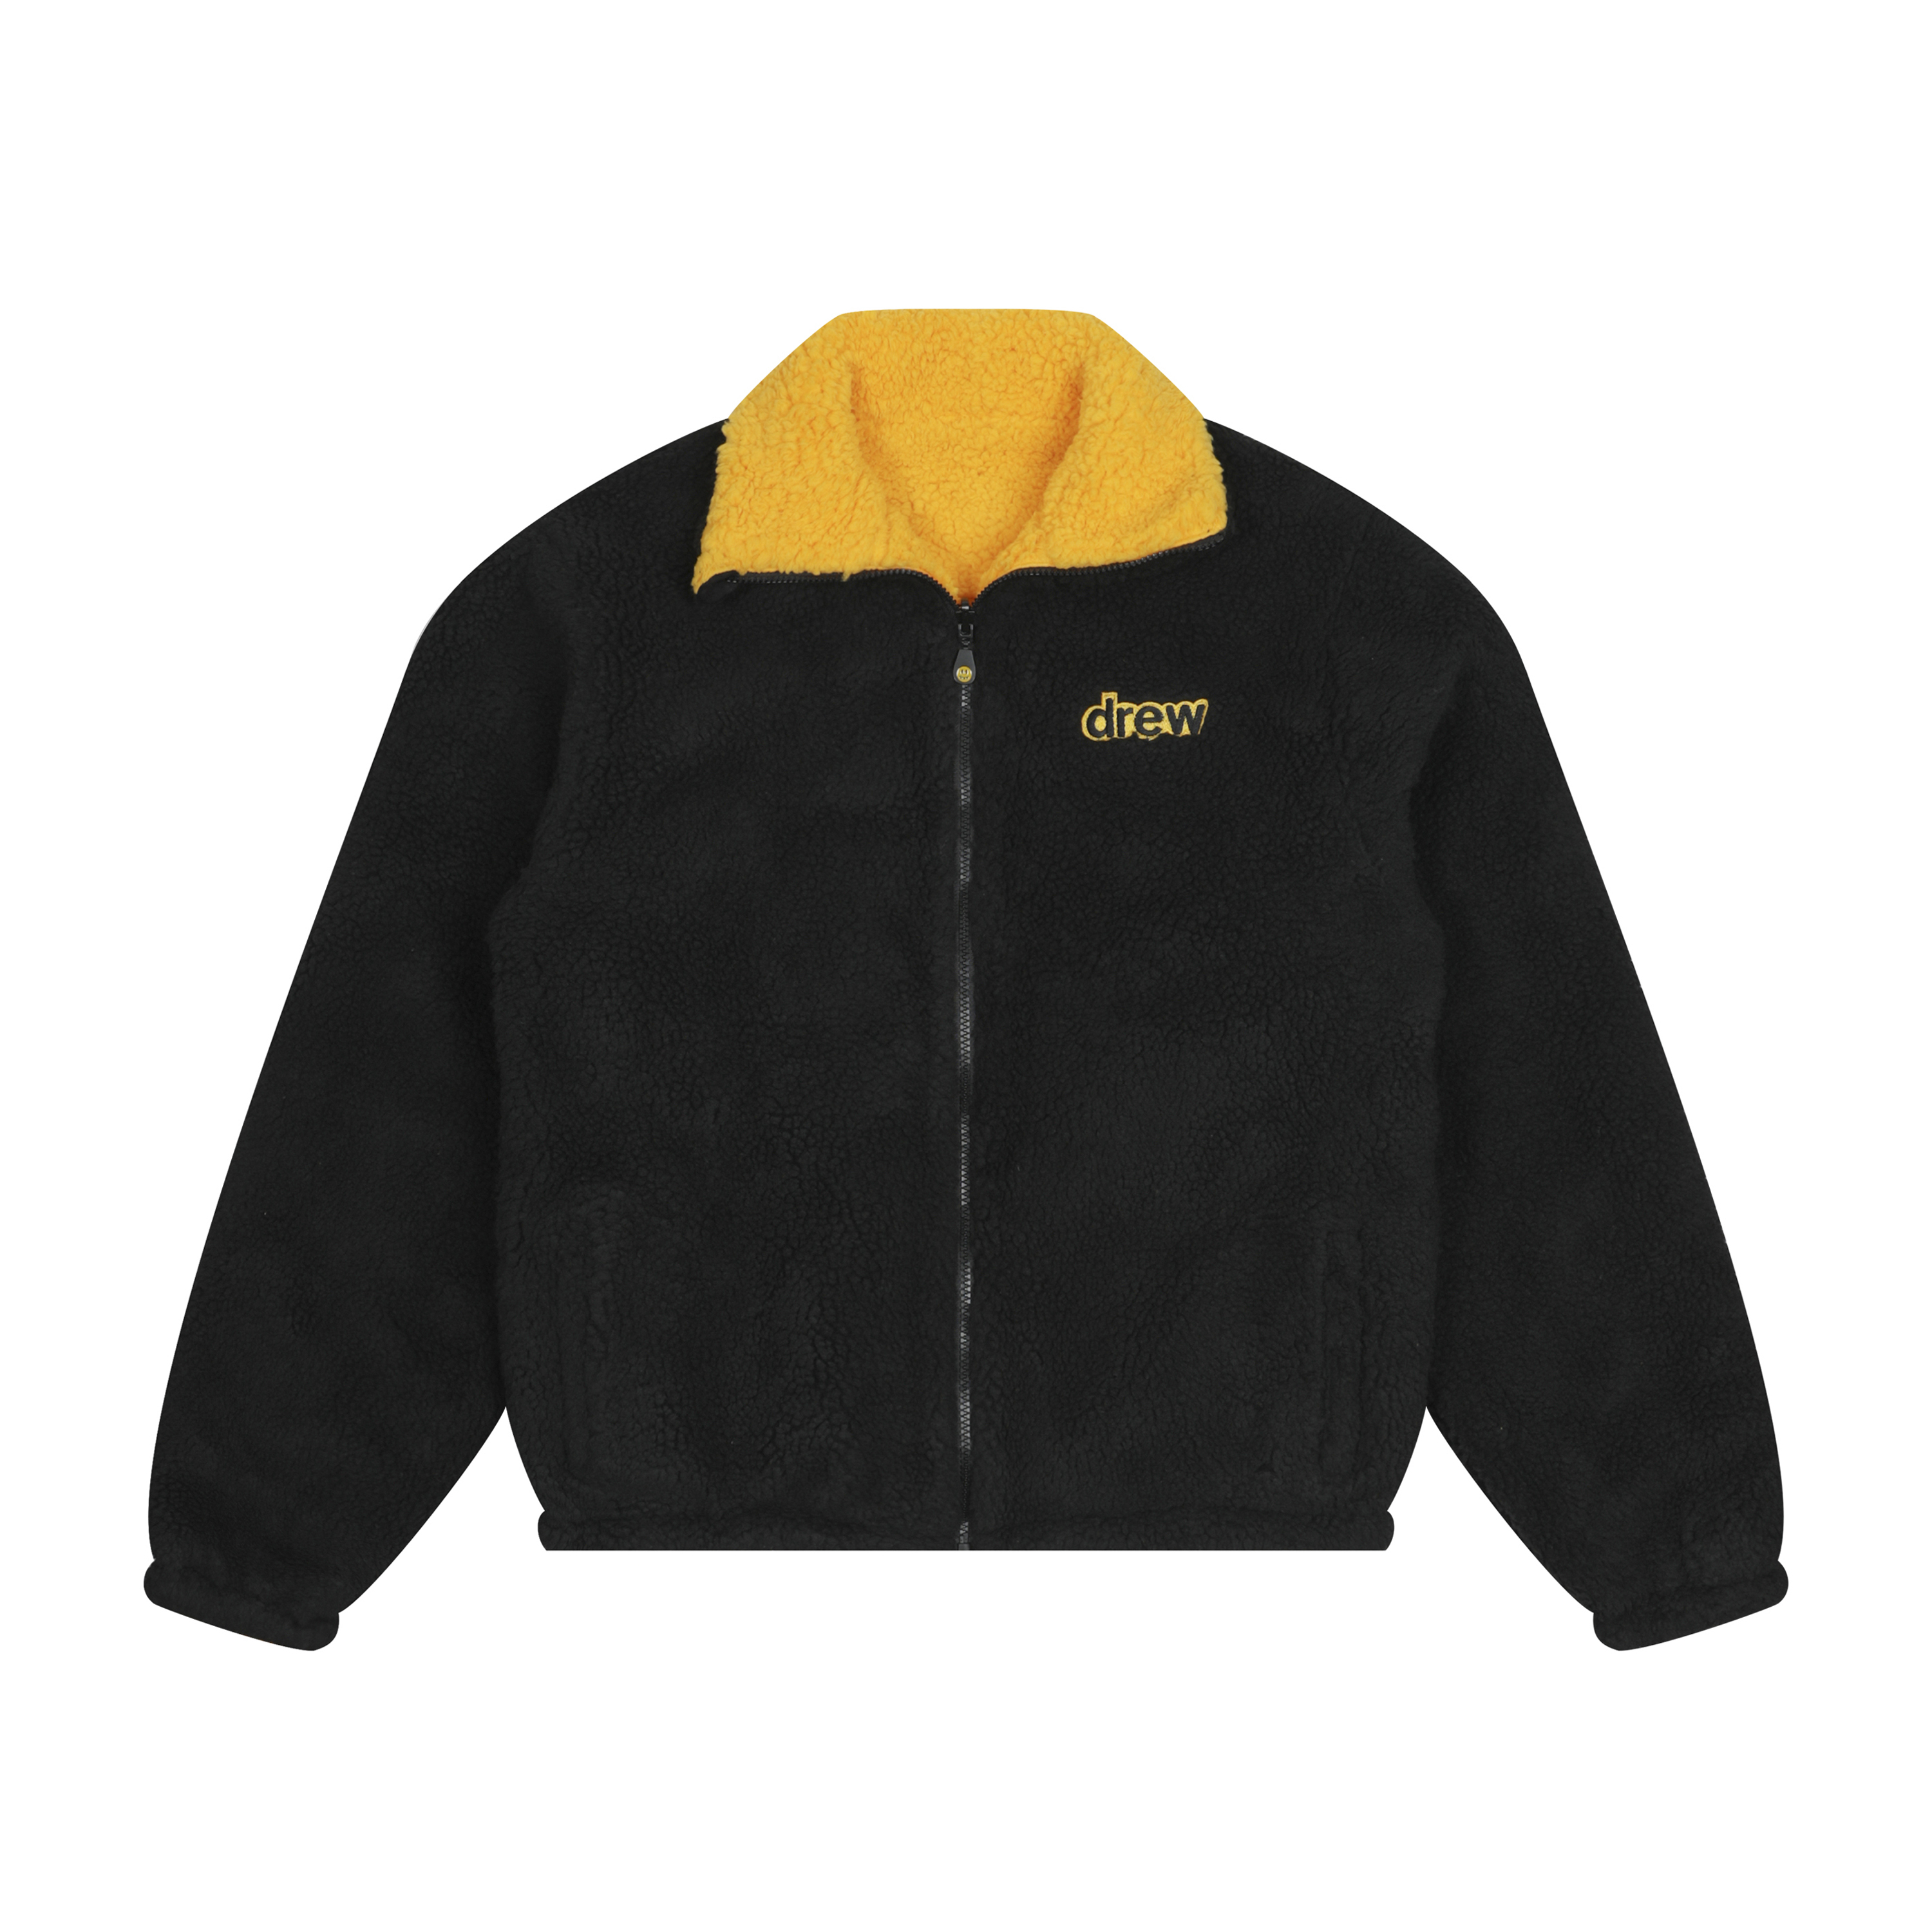 drew house reversible zip up jacket black/golden yellow メンズ ...